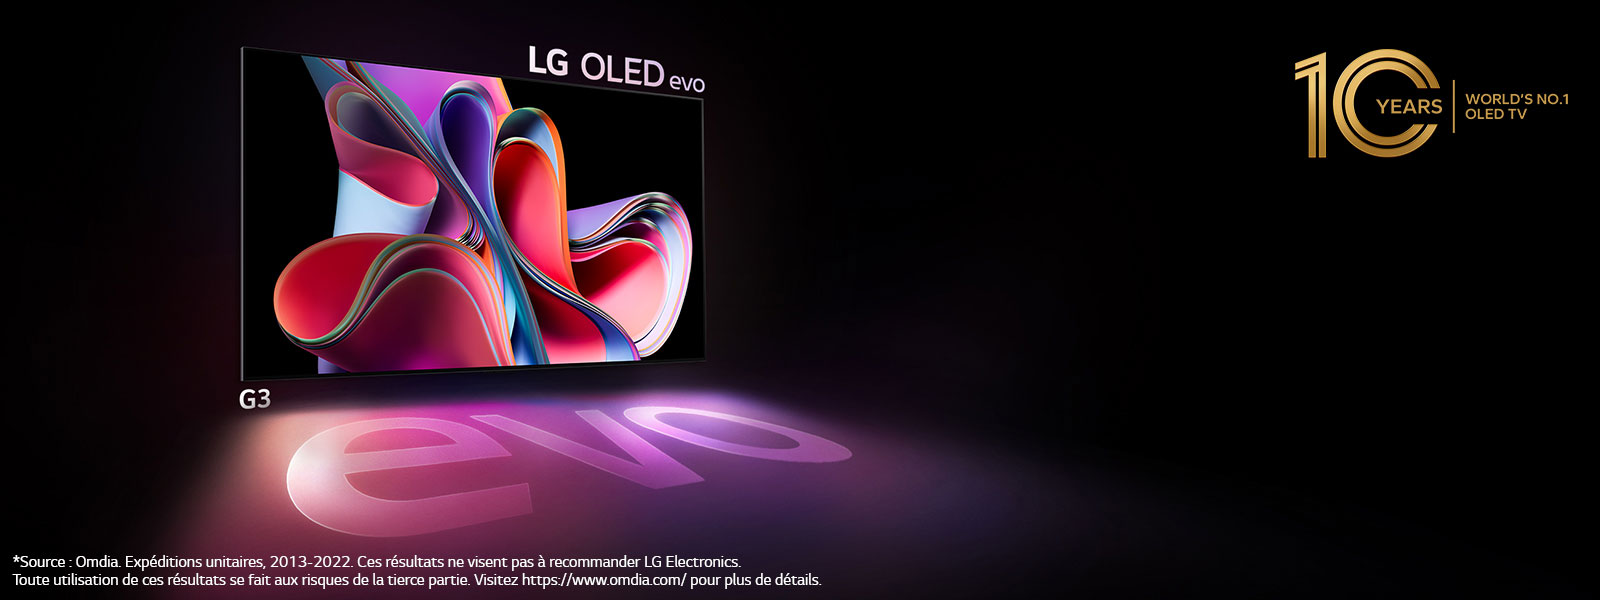 Телевізор LG OLED G3 світить у темному просторі. Угорі праворуч логотип згадує 10 -ту річницю OLED